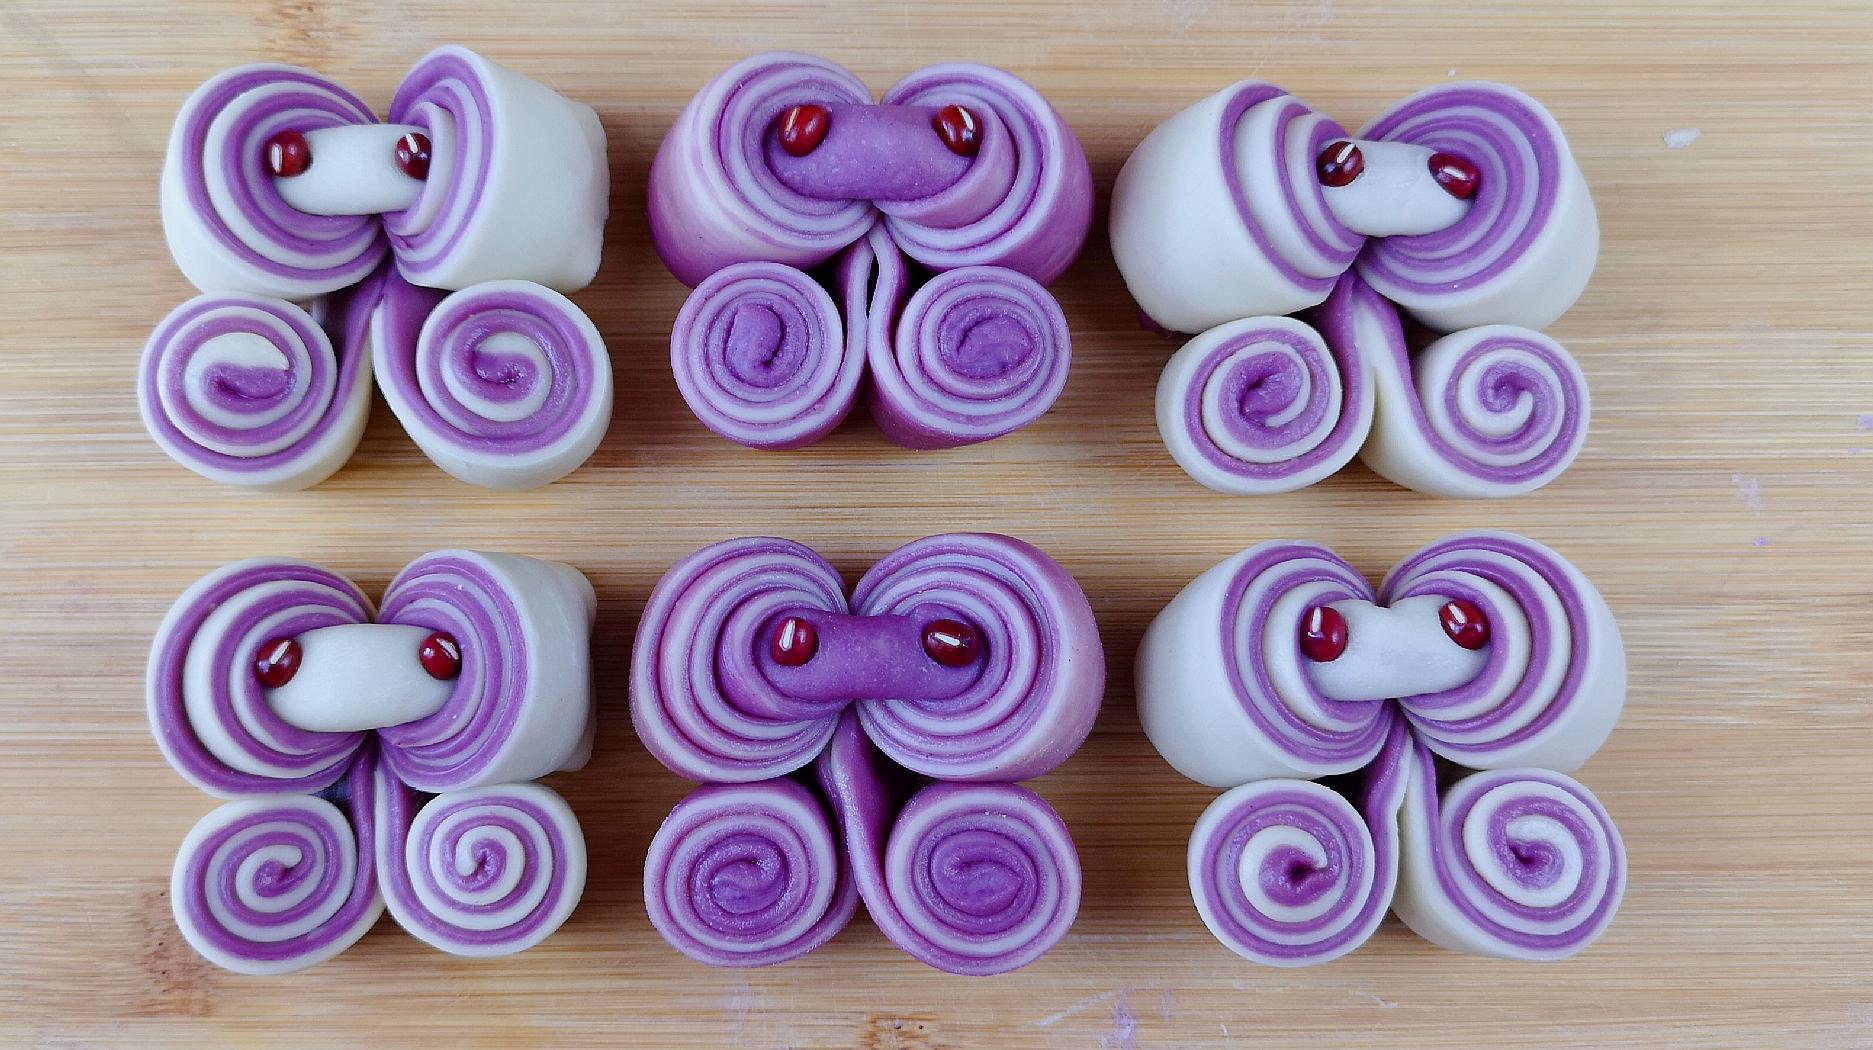 1紫薯千层花卷:花样面食,紫薯千层花卷创新做法,简单好看,营养又好吃